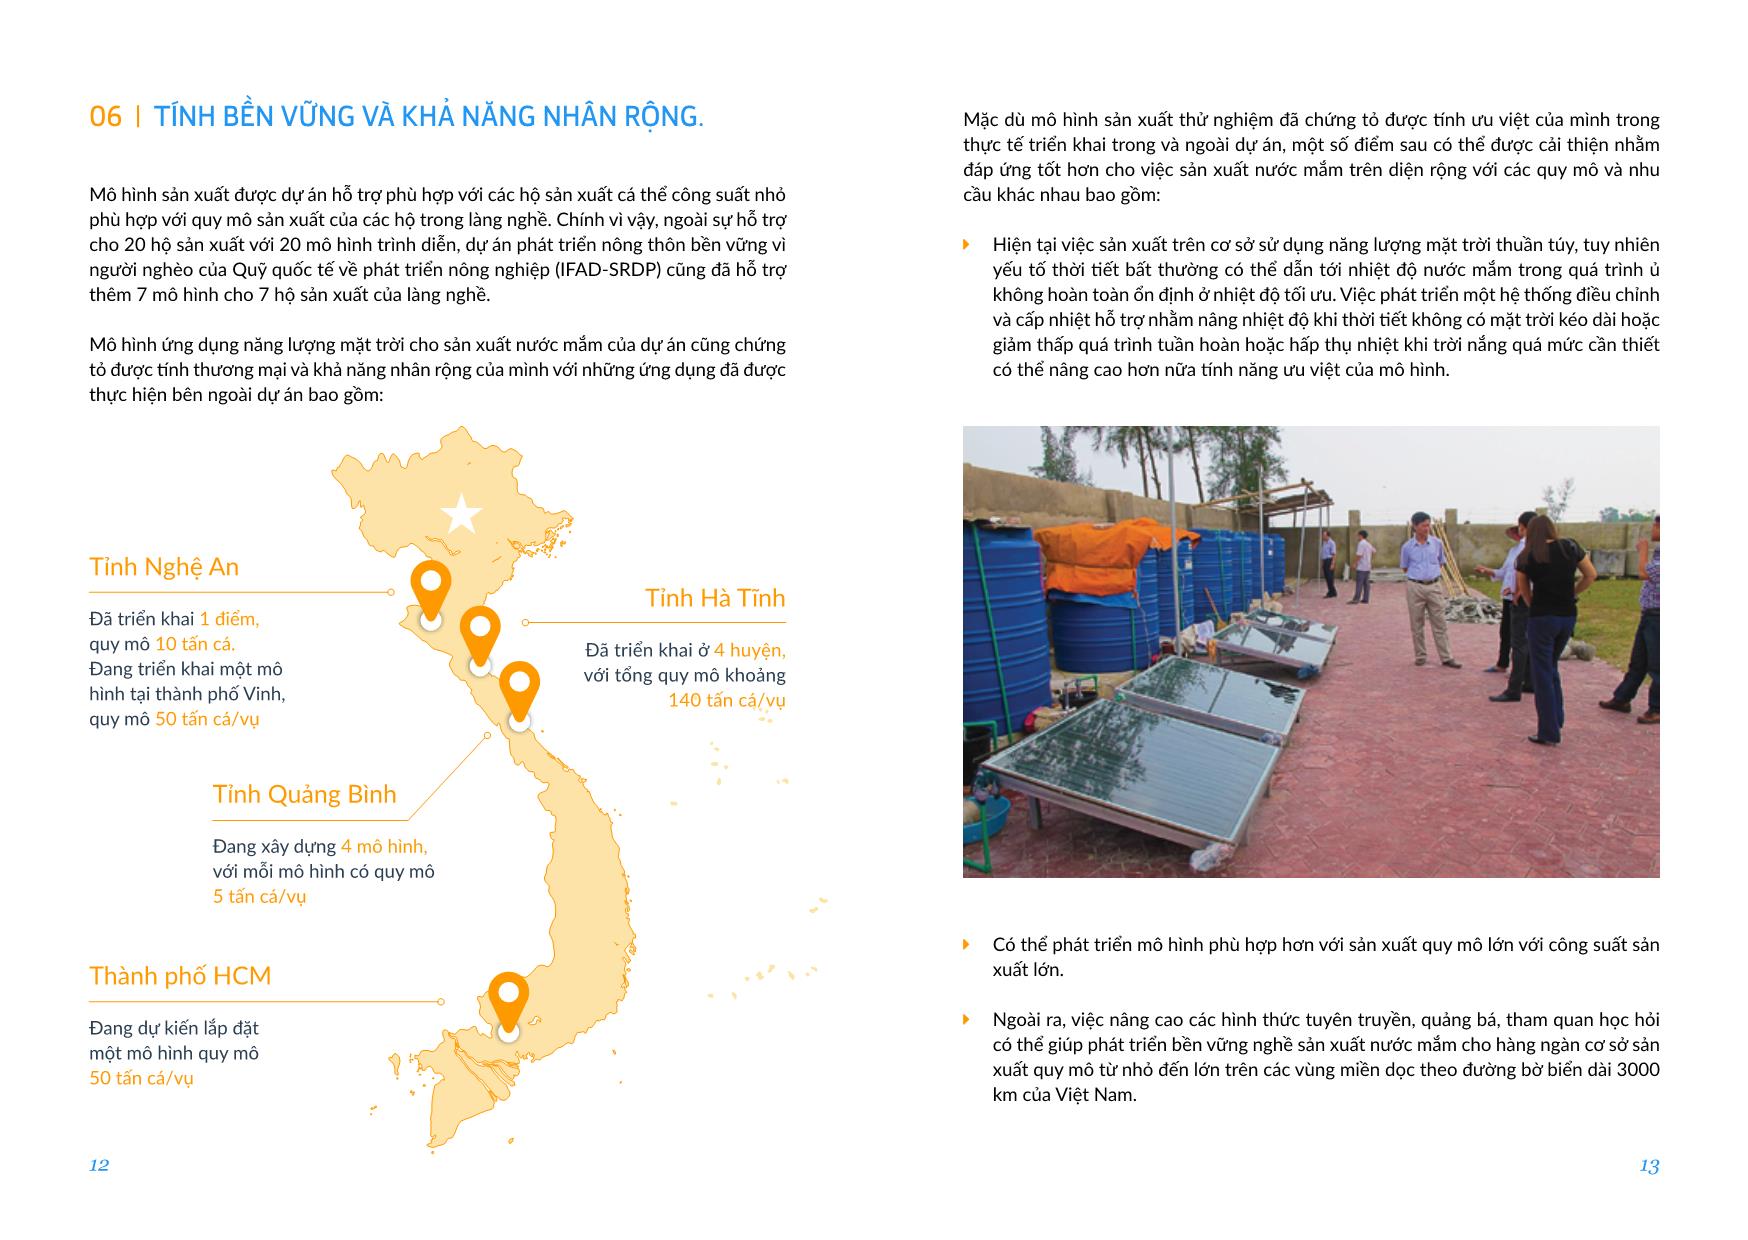 Dự án Ứng dụng năng lượng mặt trời trong sản xuất nước mắm tại xã Cẩm Nhượng, huyện Cẩm Xuyên, Hà Tĩnh trang 7